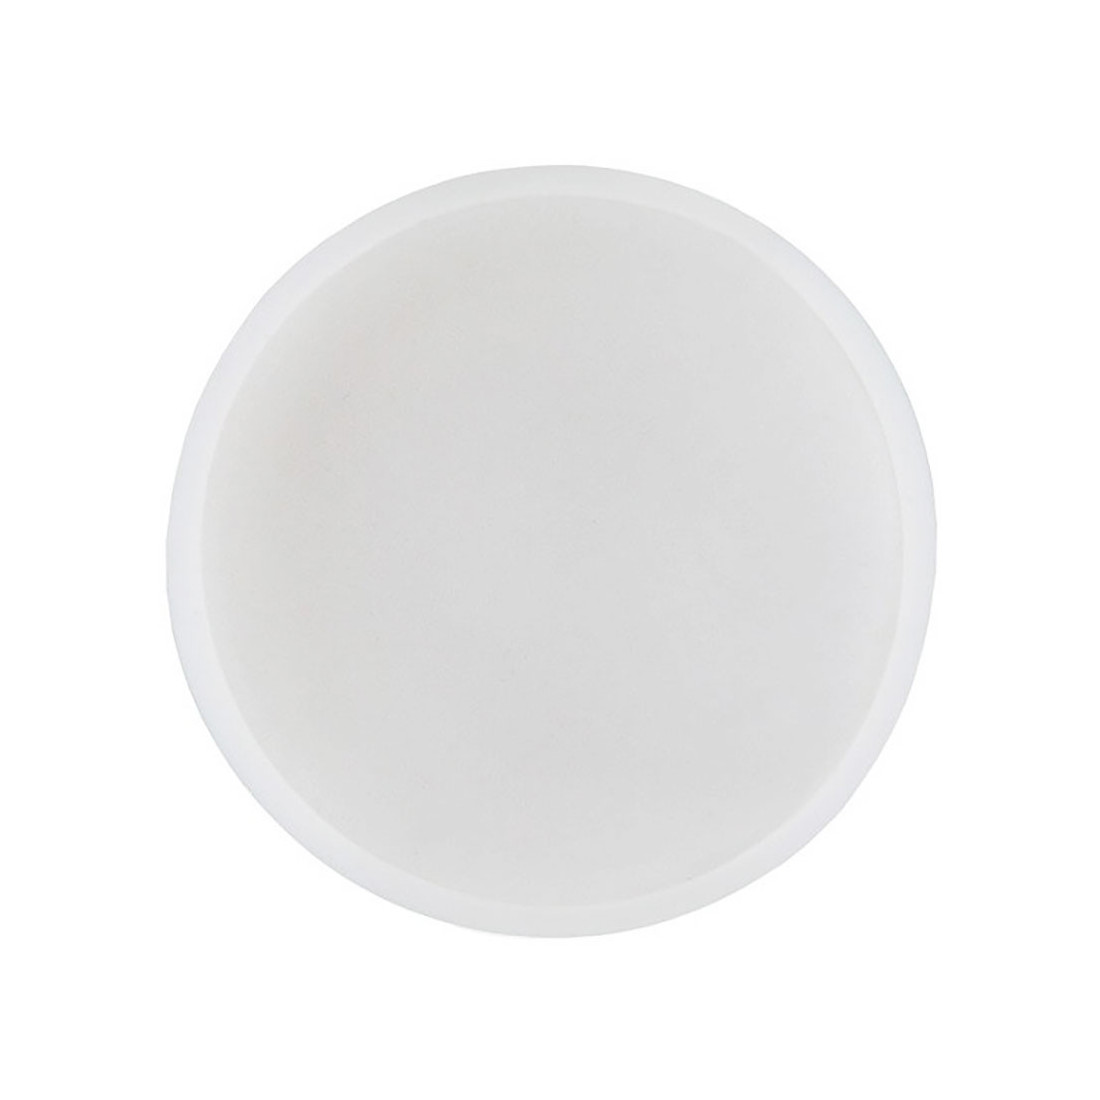 Filtre silicone couleur blanc pour ampoule LED GU10 ou MR16